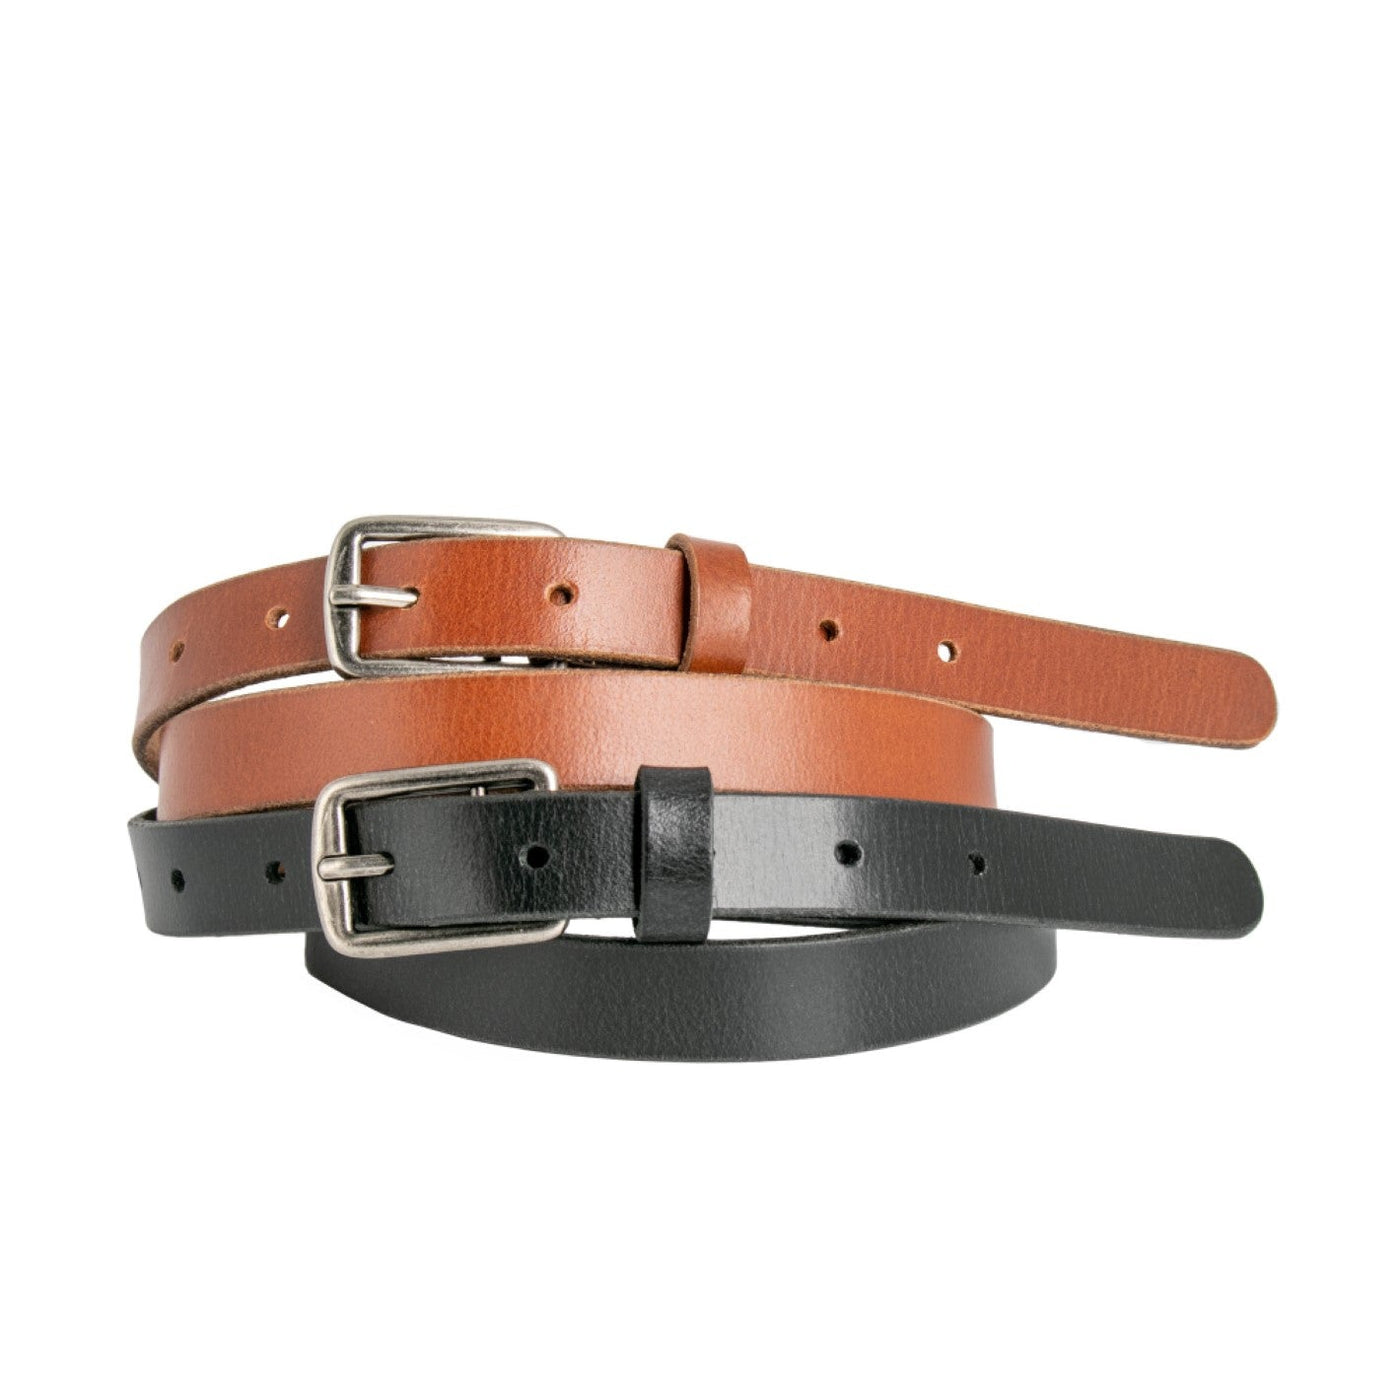 cloe leather belt - black belt loop leather 